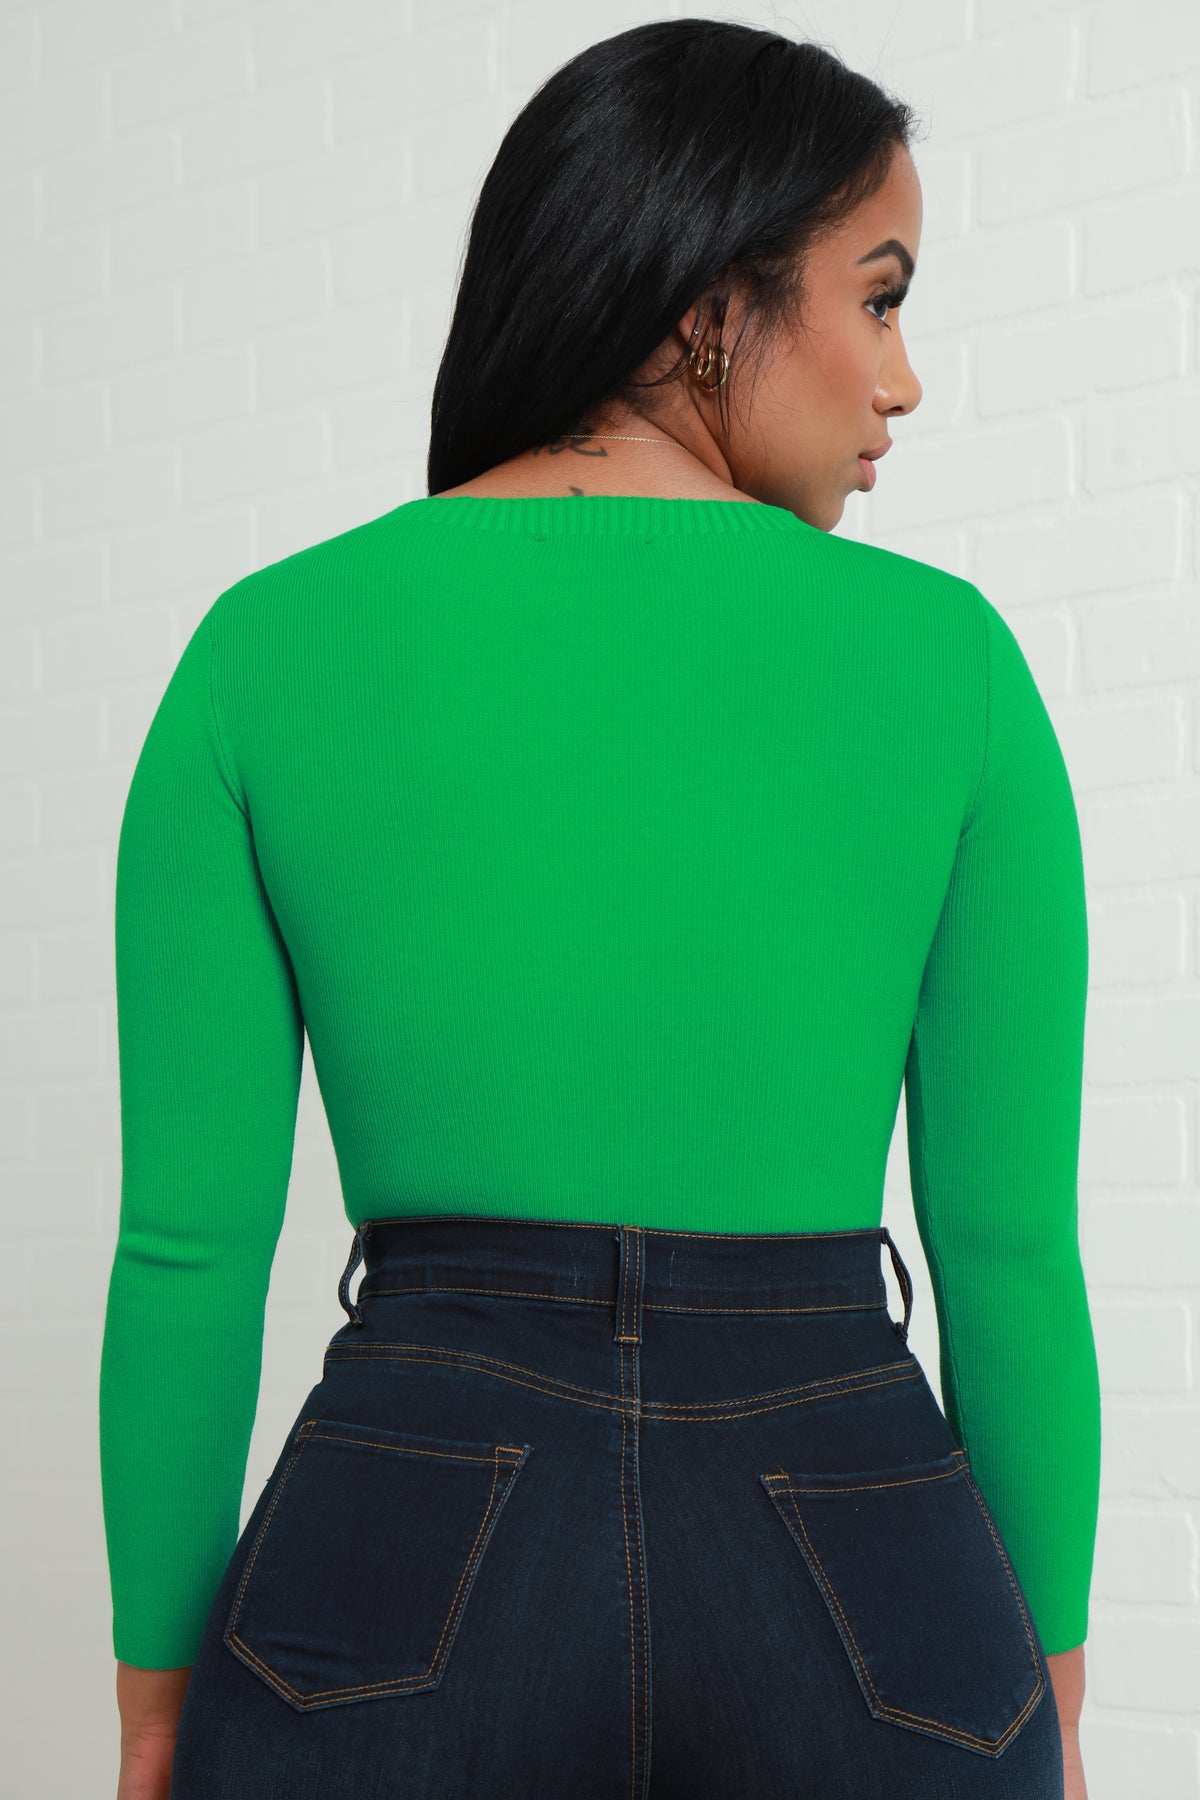 
              Take A Peek Cut Out Knit Top - Green - Swank A Posh
            